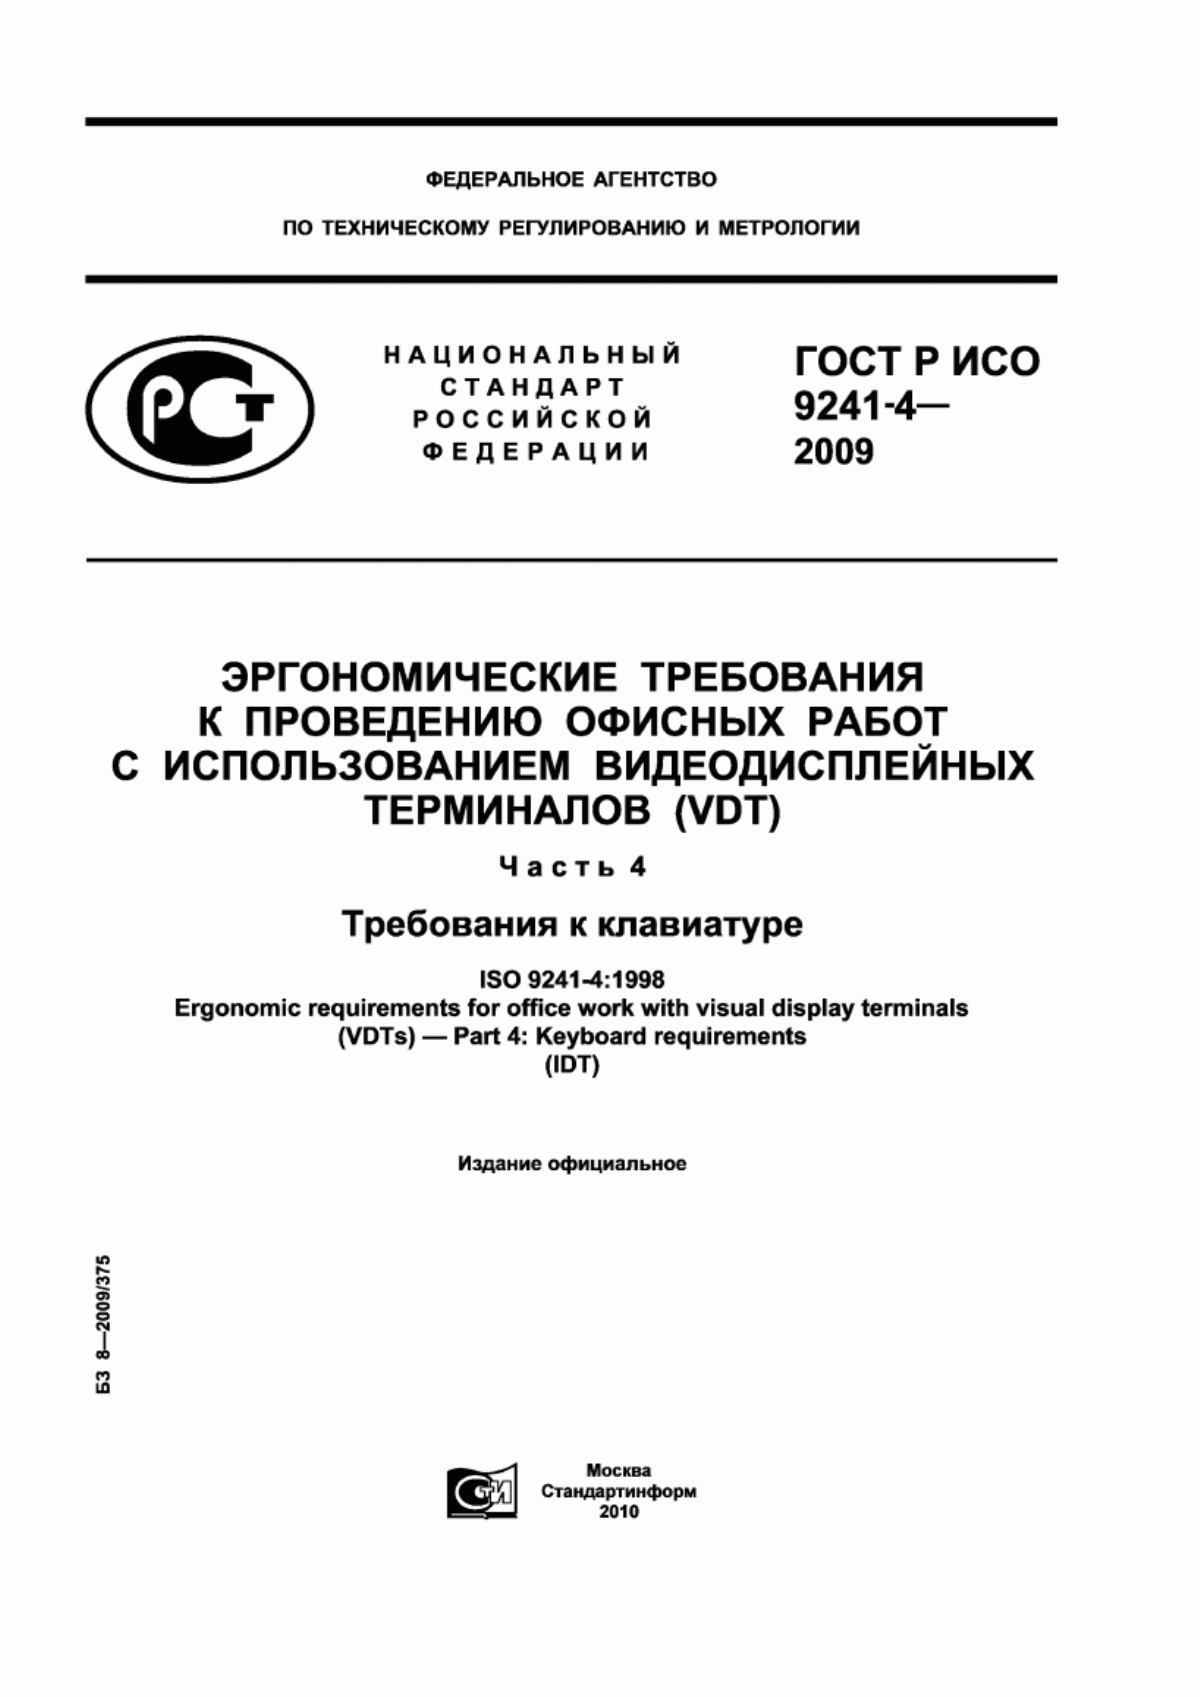 ГОСТ Р ИСО 9241-4-2009 Эргономические требования к проведению офисных работ с использованием видеодисплейных терминалов (VDT). Часть 4. Требования к клавиатуре